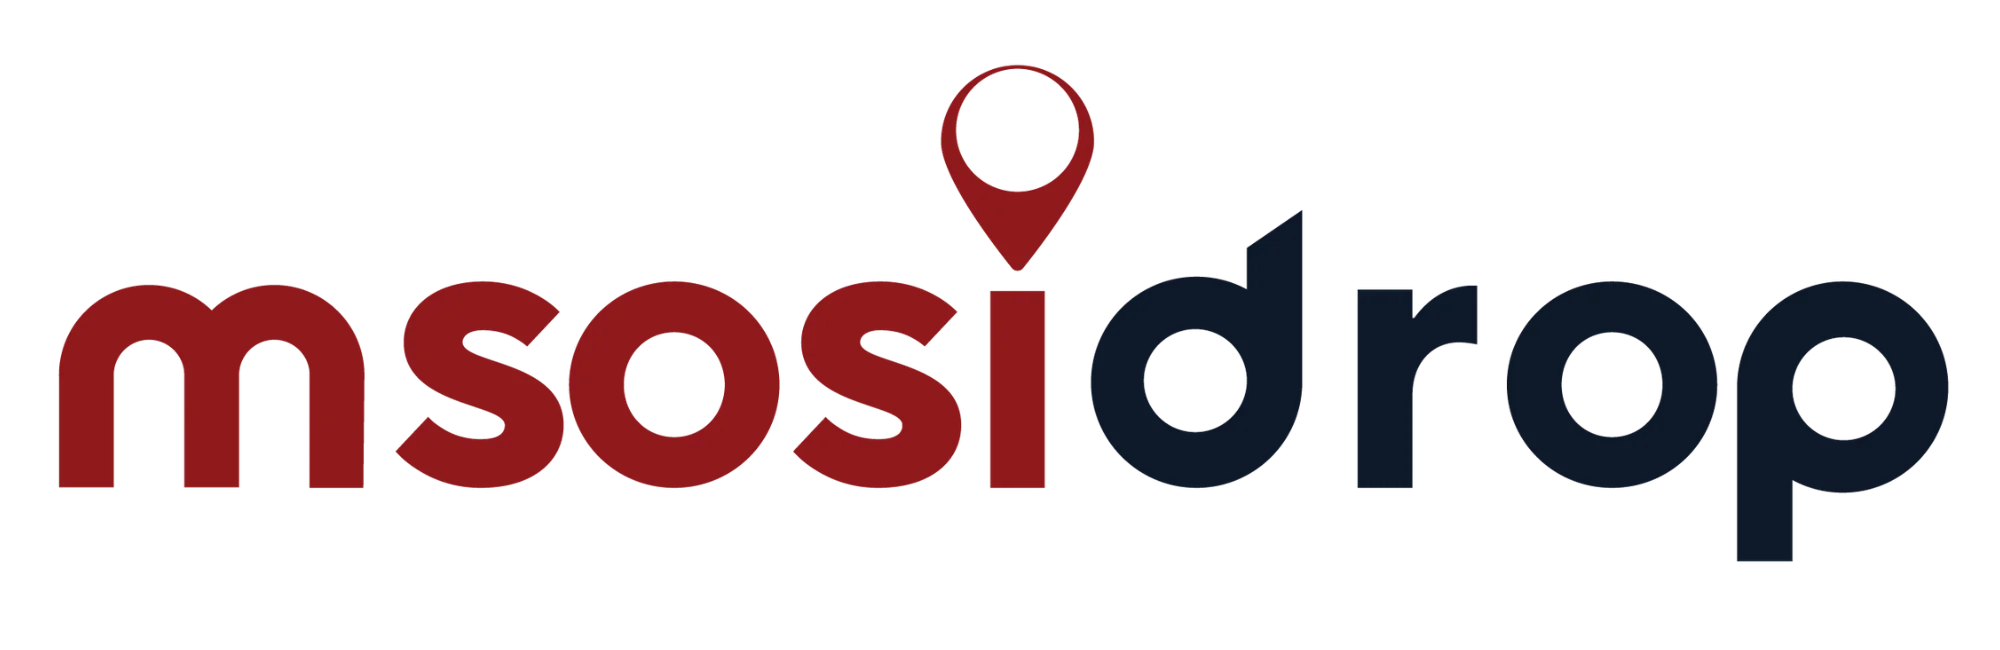 Msosidrop logo